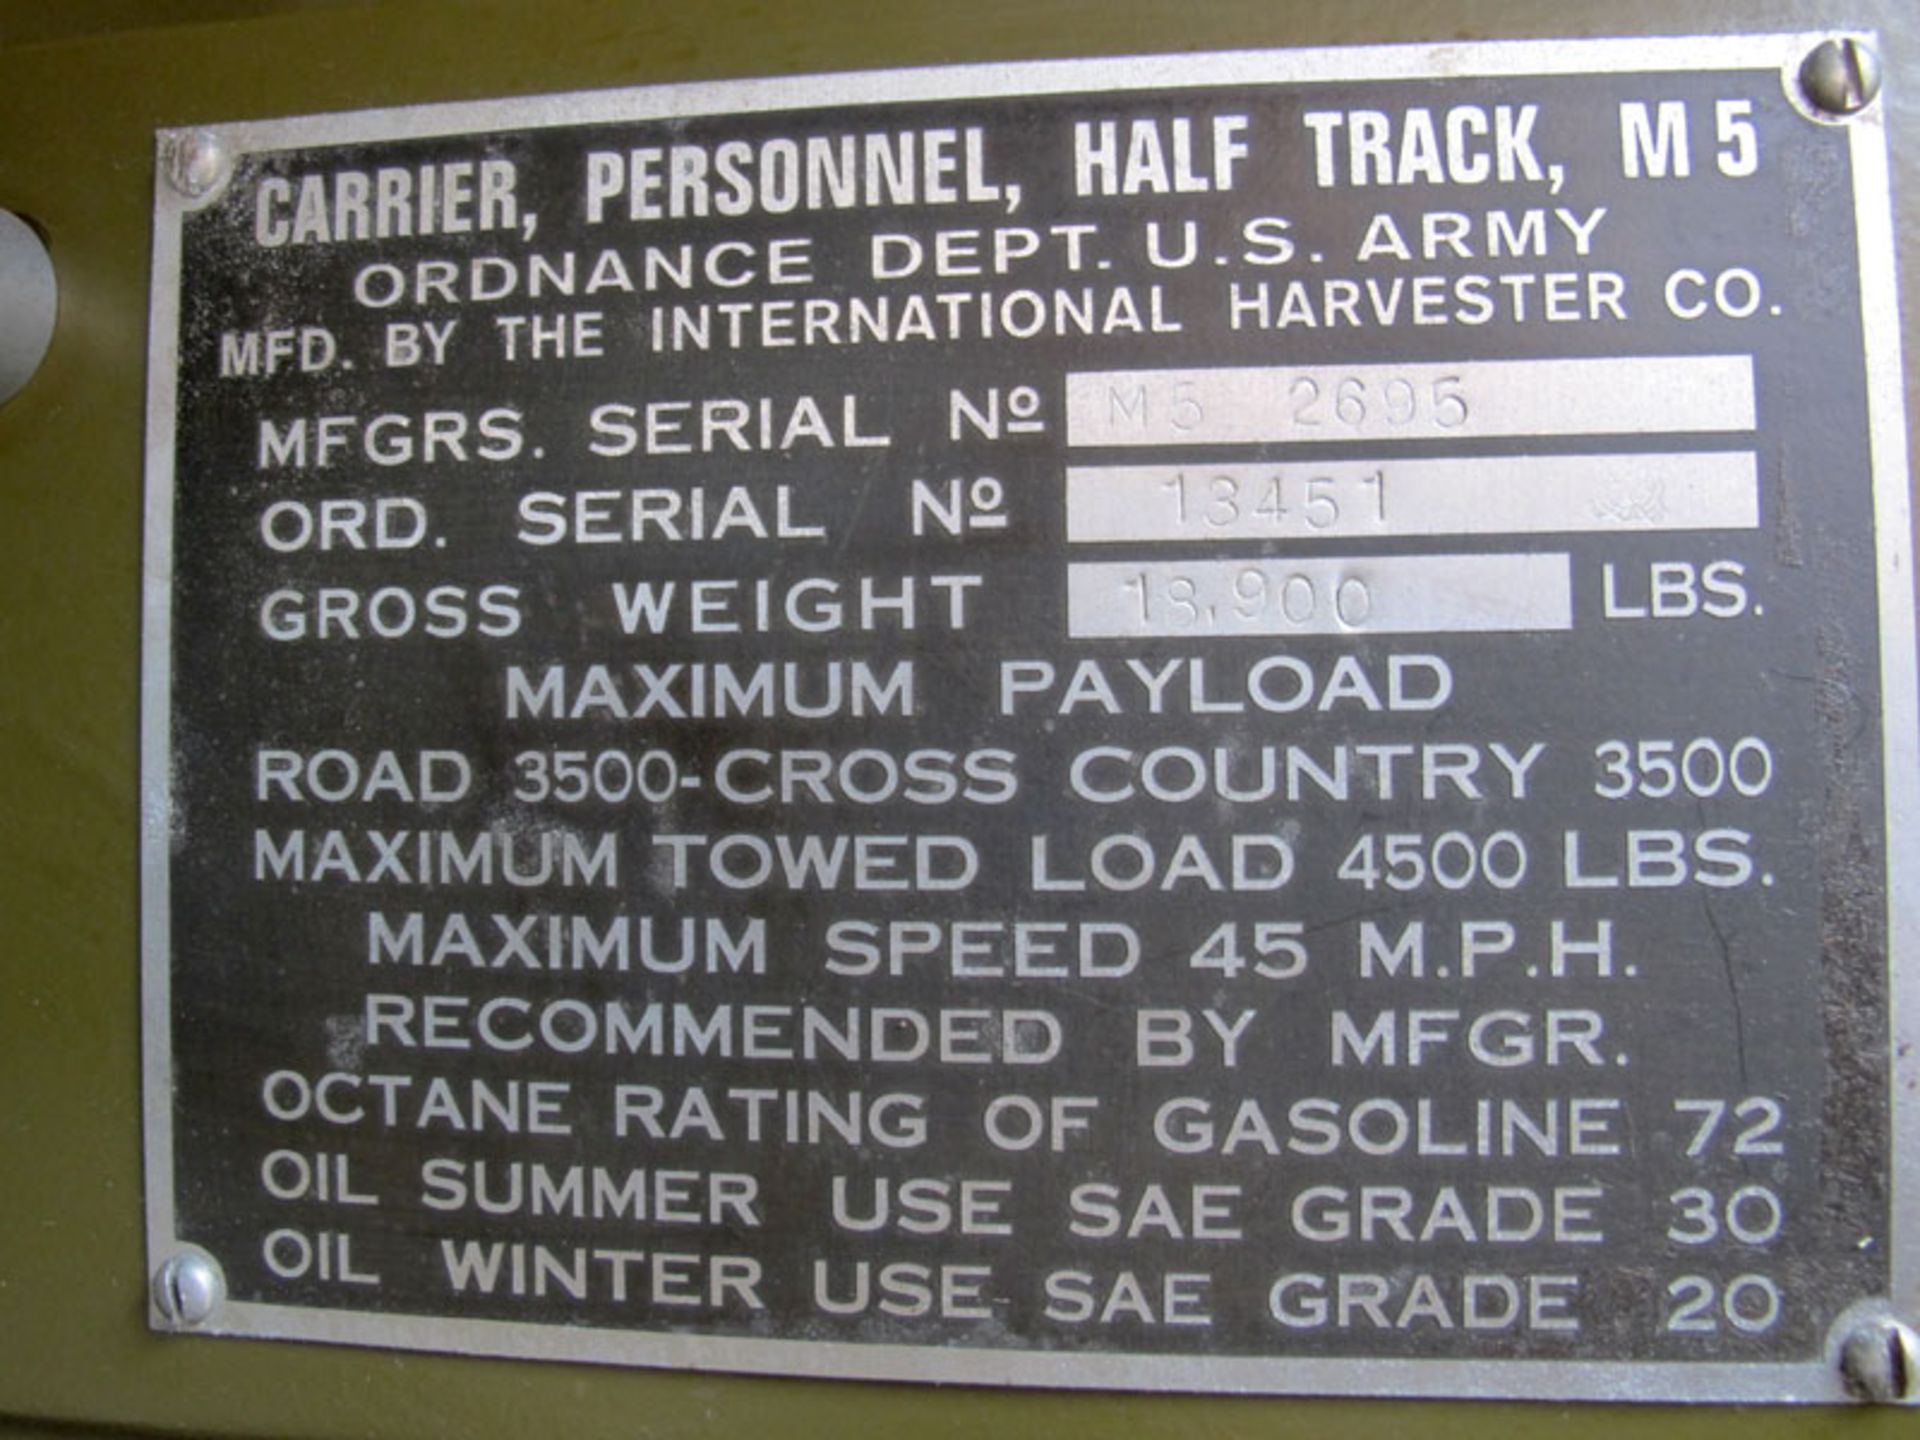 1943 International Harvester M5 Half-Track Personnel Carrier - Image 14 of 15